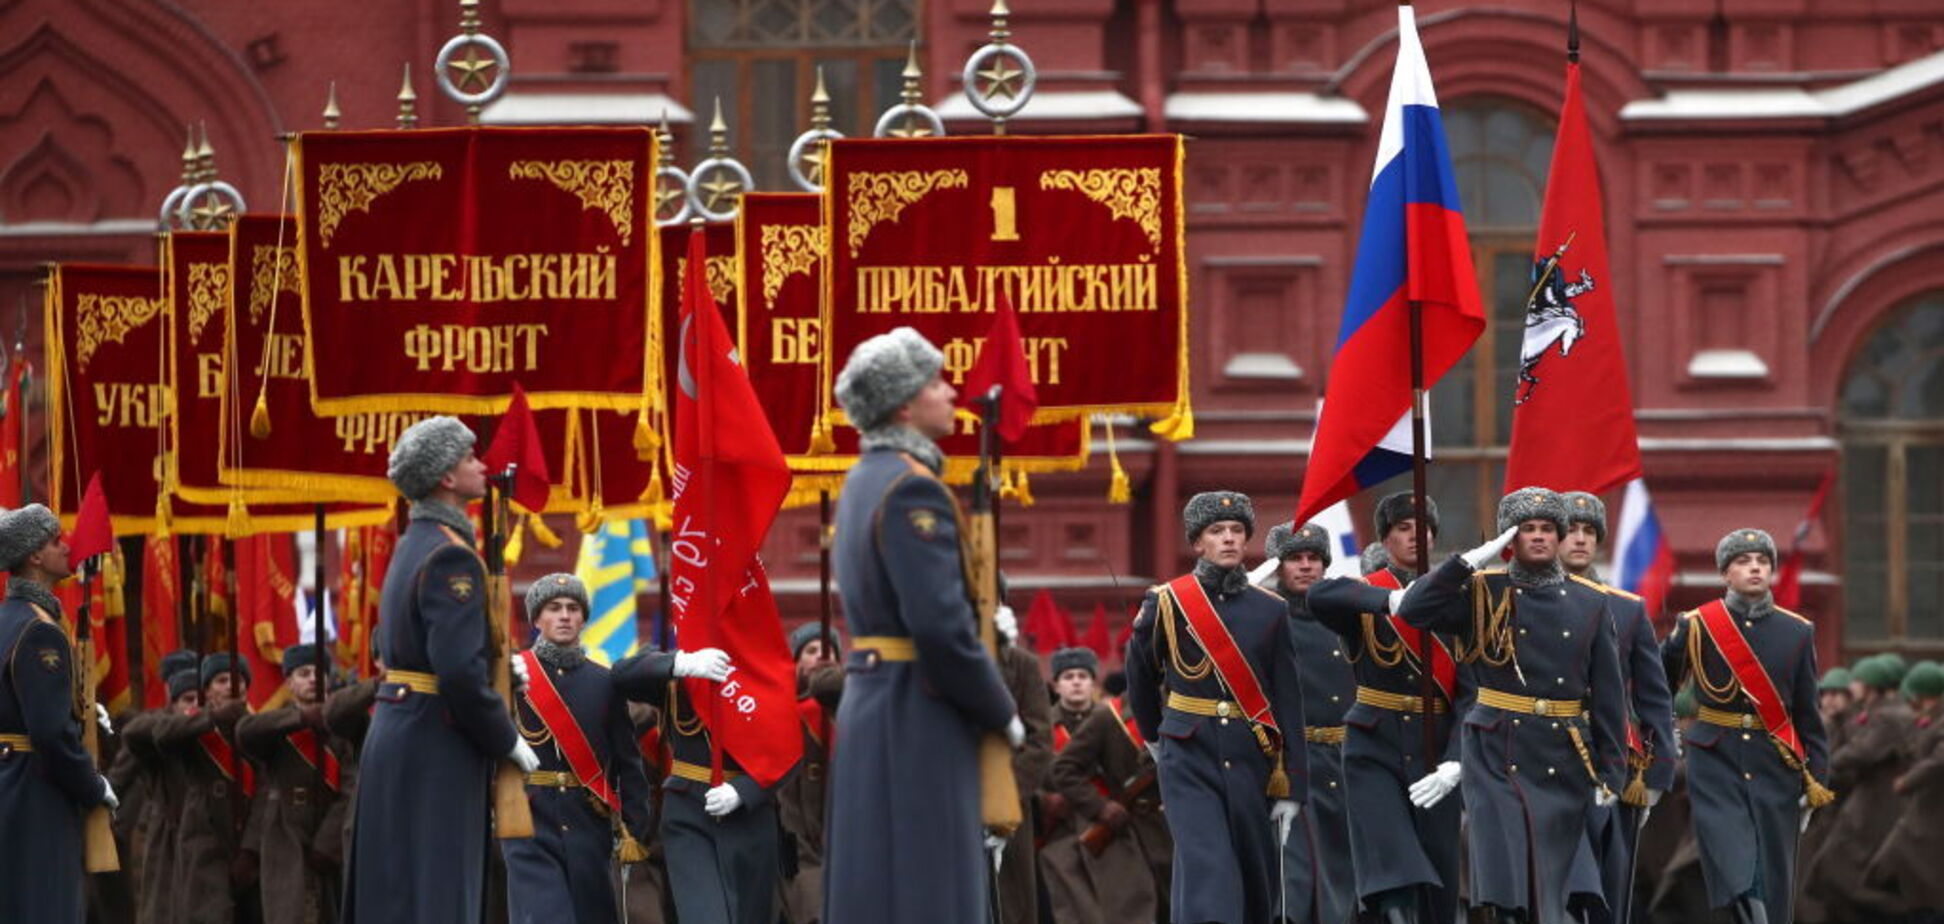 'Червоний шабаш': парад Путіна обурив росіян. Фото й відео